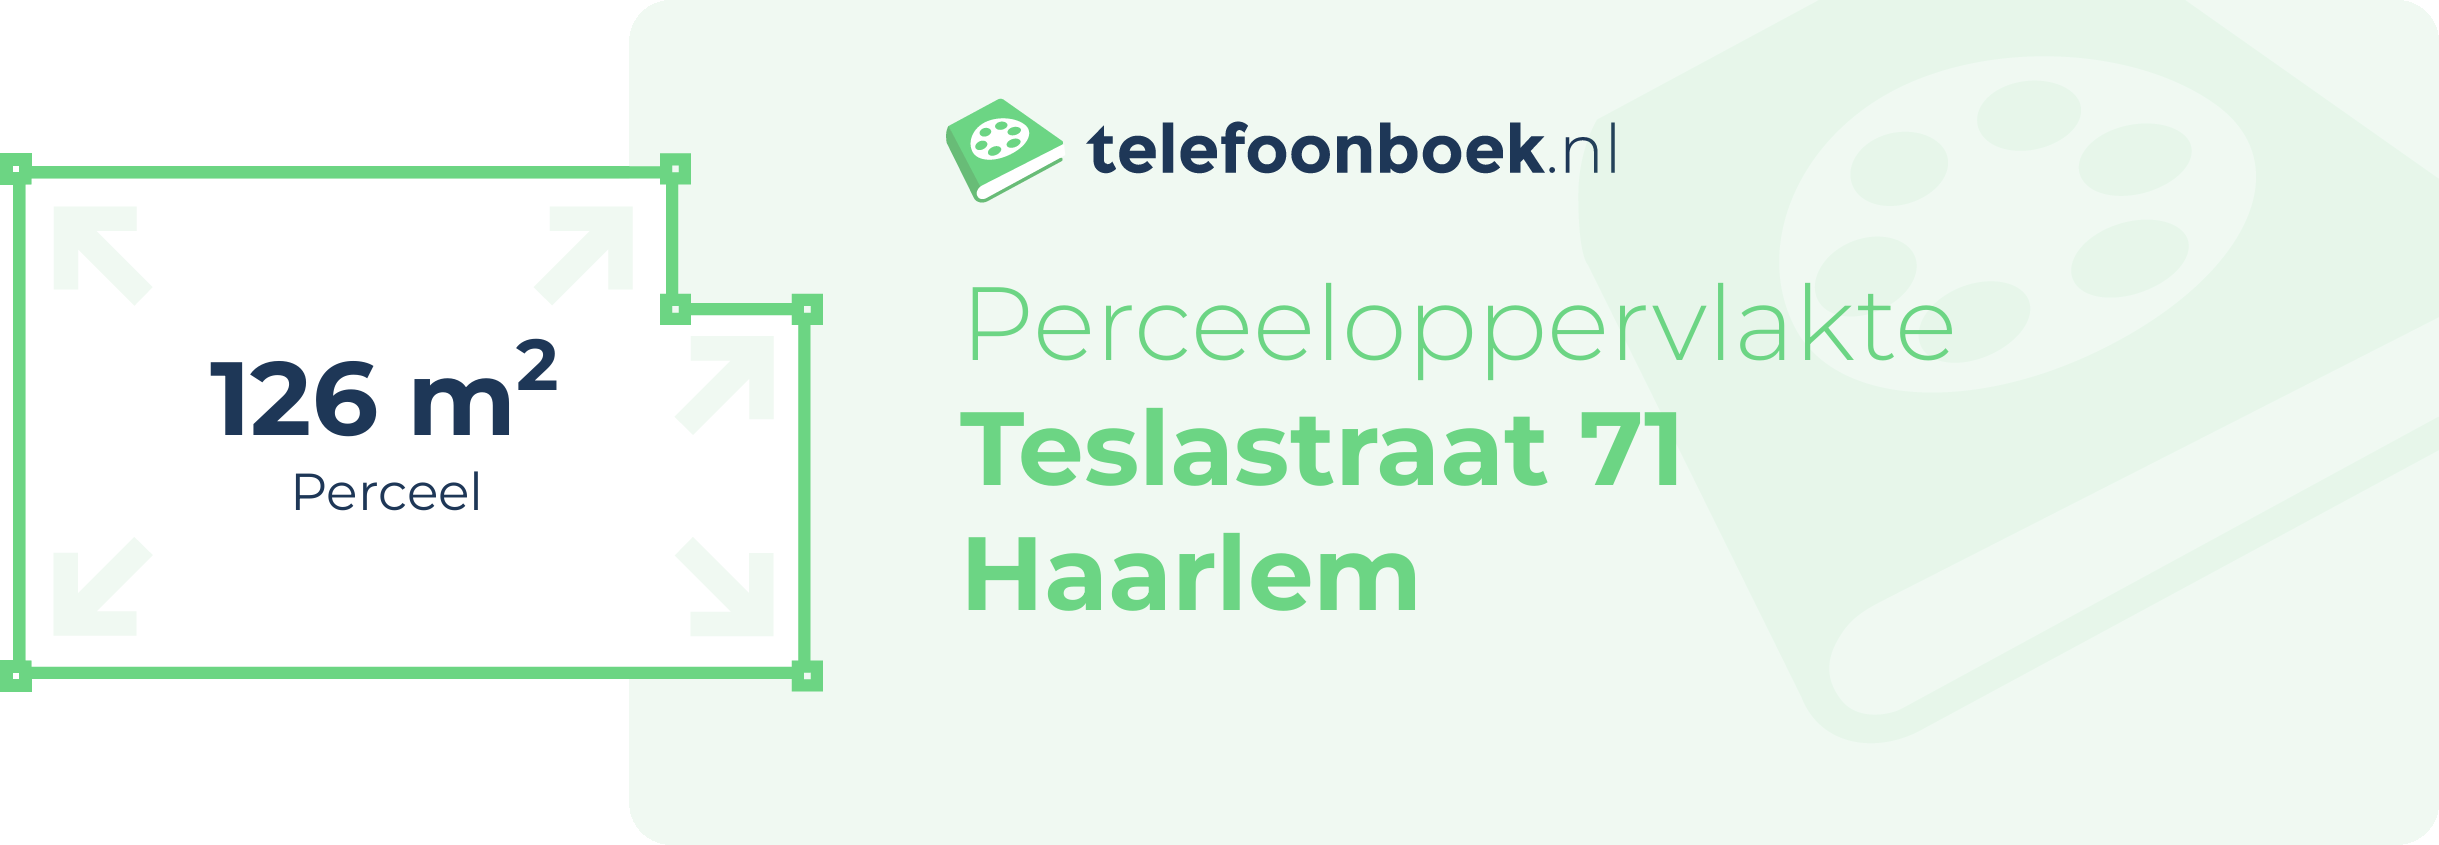 Perceeloppervlakte Teslastraat 71 Haarlem